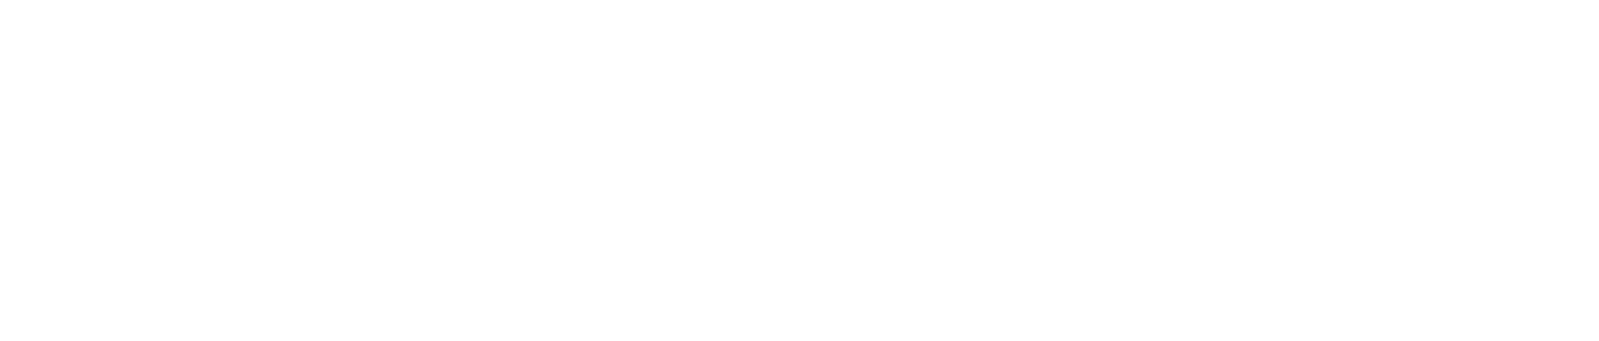 Getnet logo large for dark backgrounds (transparent PNG)